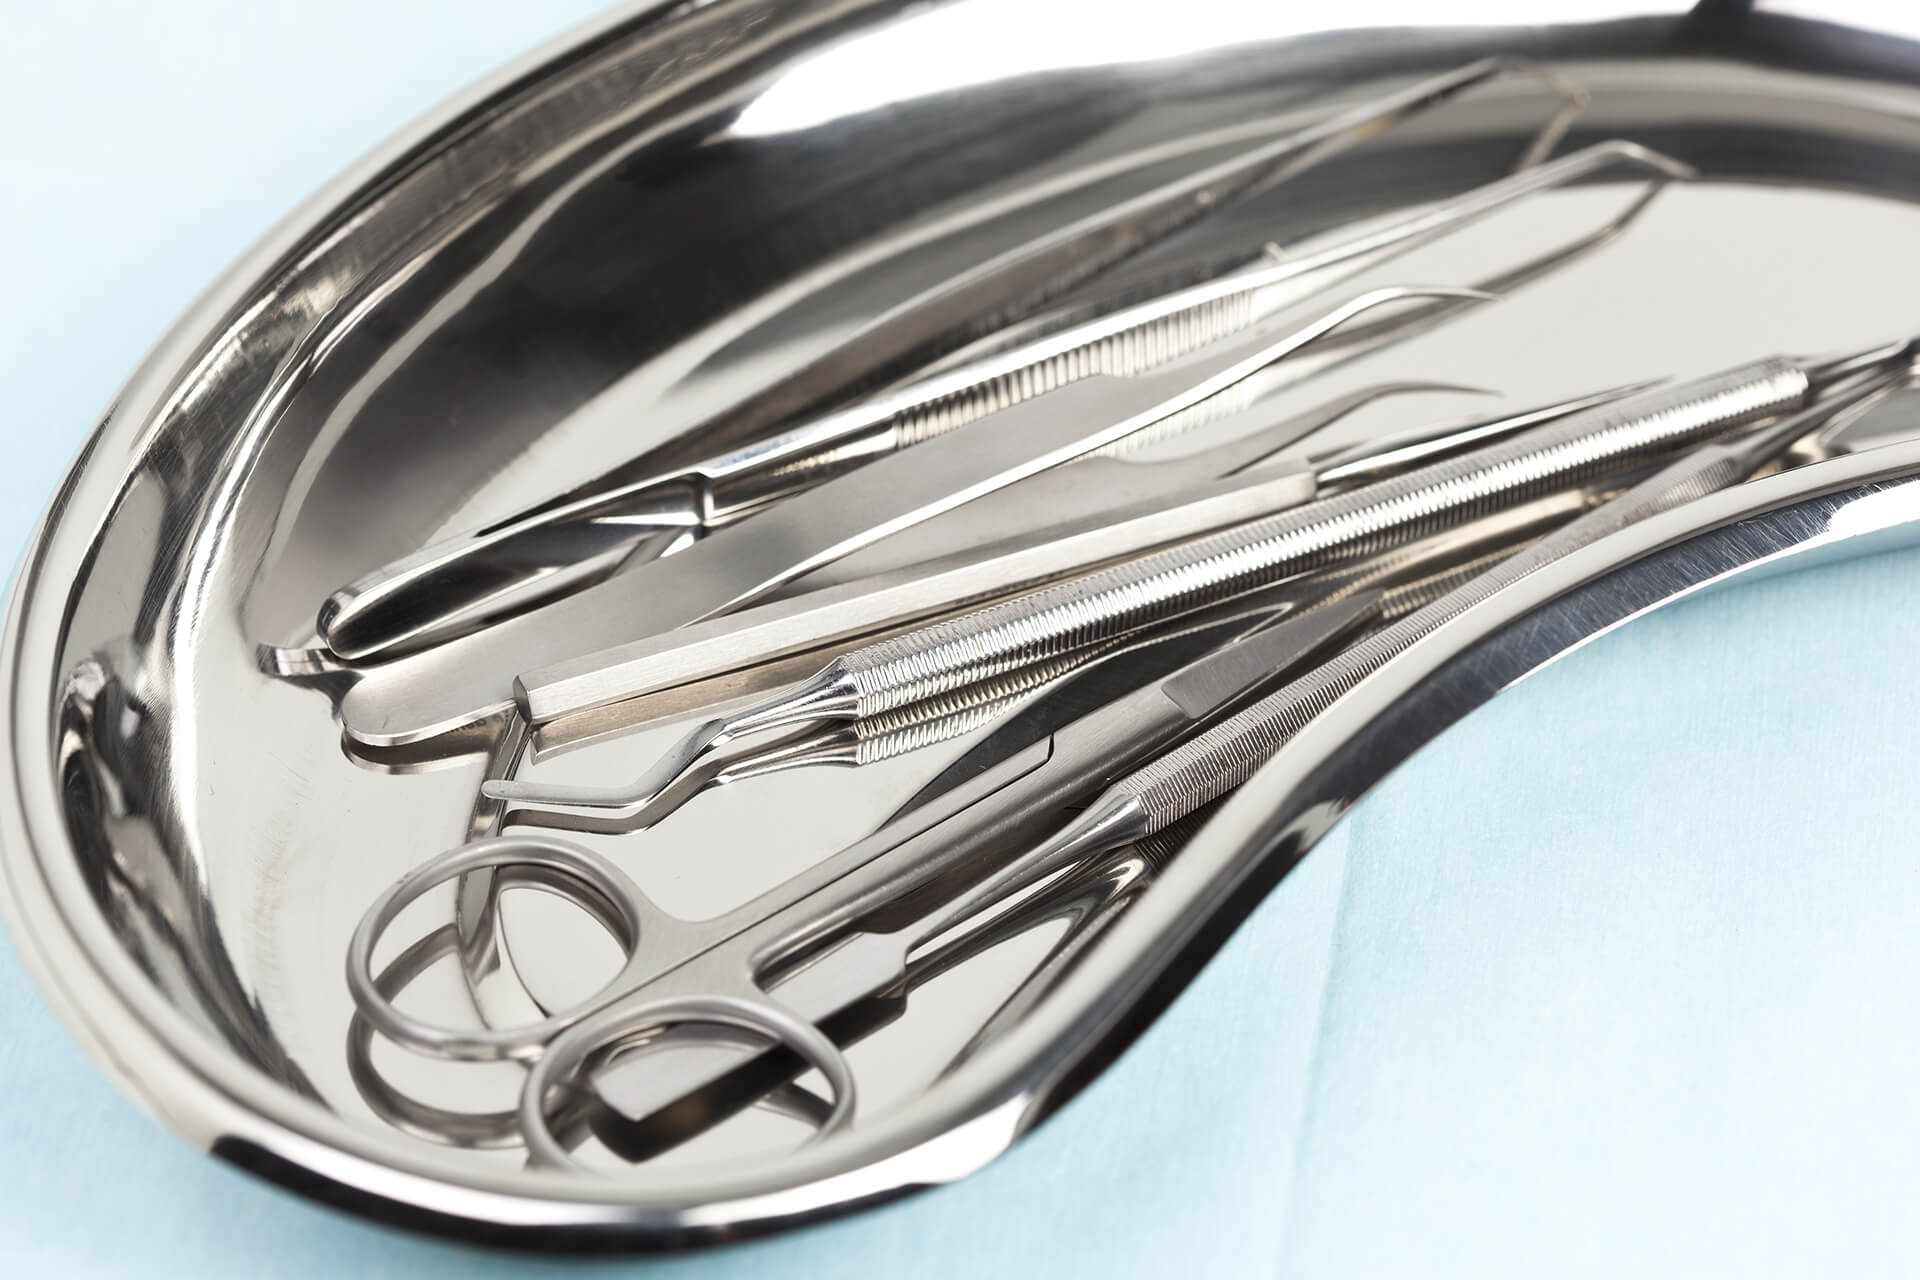 Silberne chirurgischen Schale in der chirurgischen Besteckt liegt.